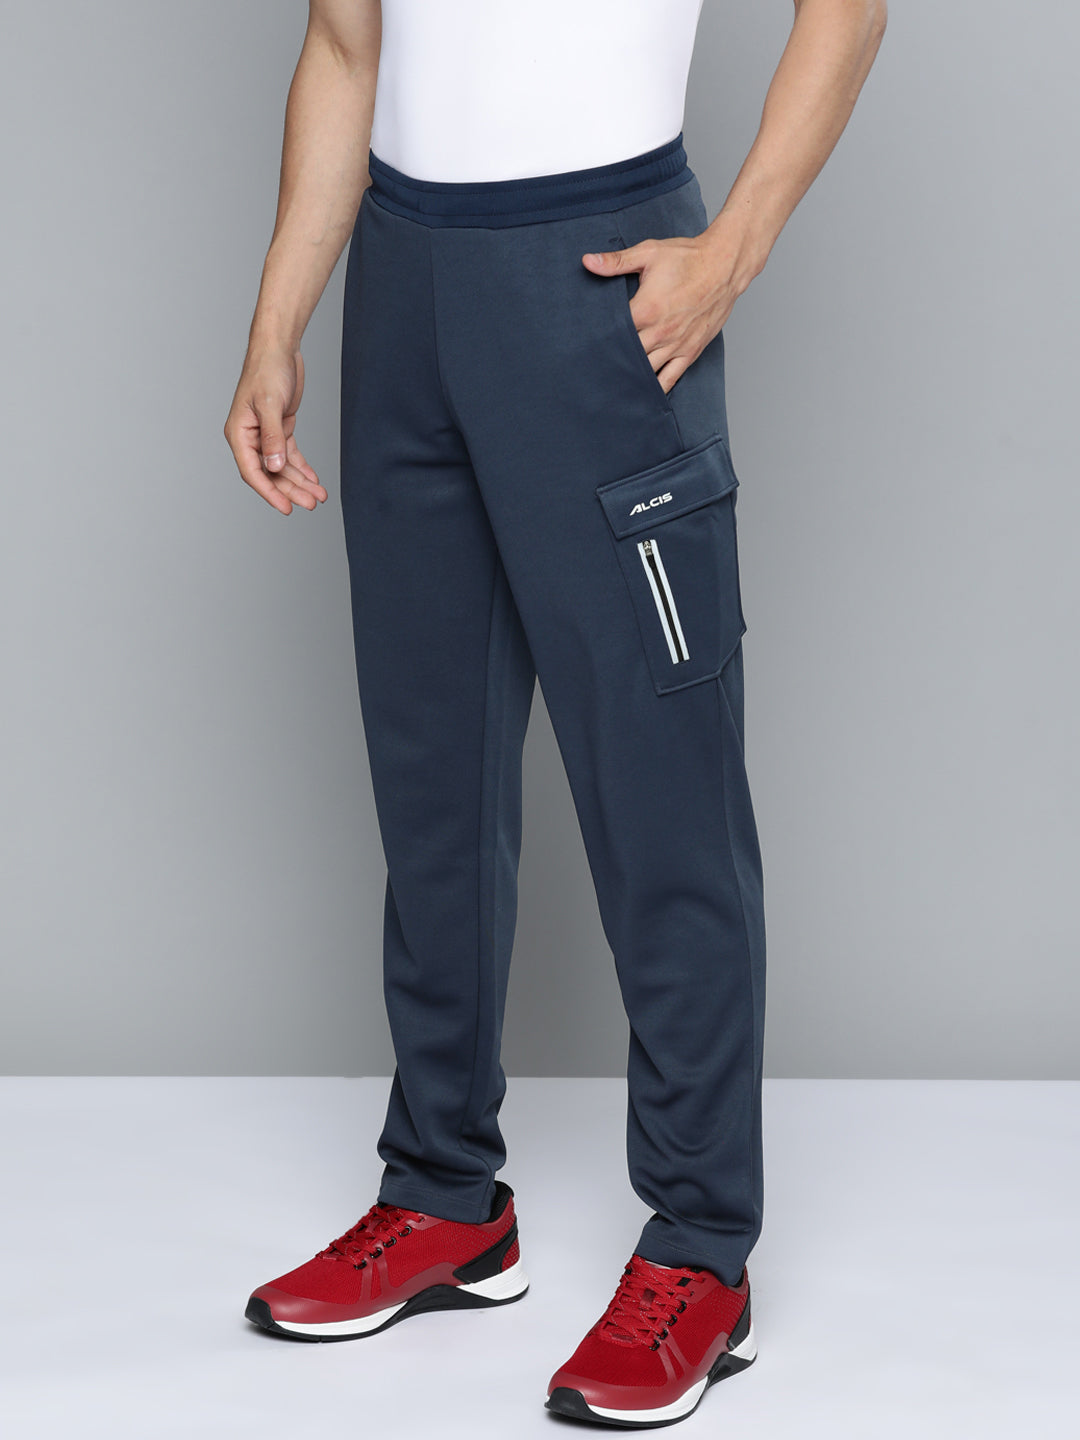 Navy Blue Track Pant for Men - Solid & 100% Cotton Regular Fit | JadeBlue